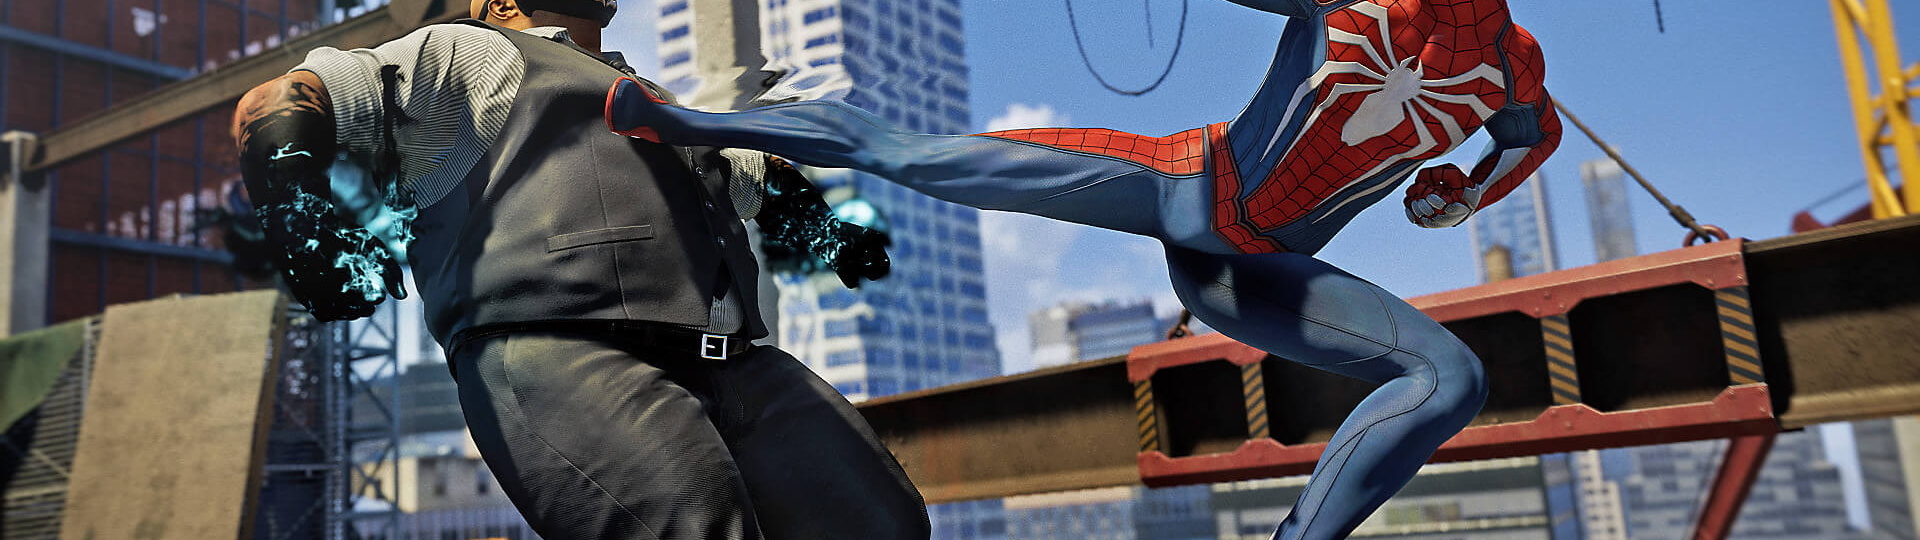 Spider-Man Remastered obsahuje nově další grafický mód | Novinky